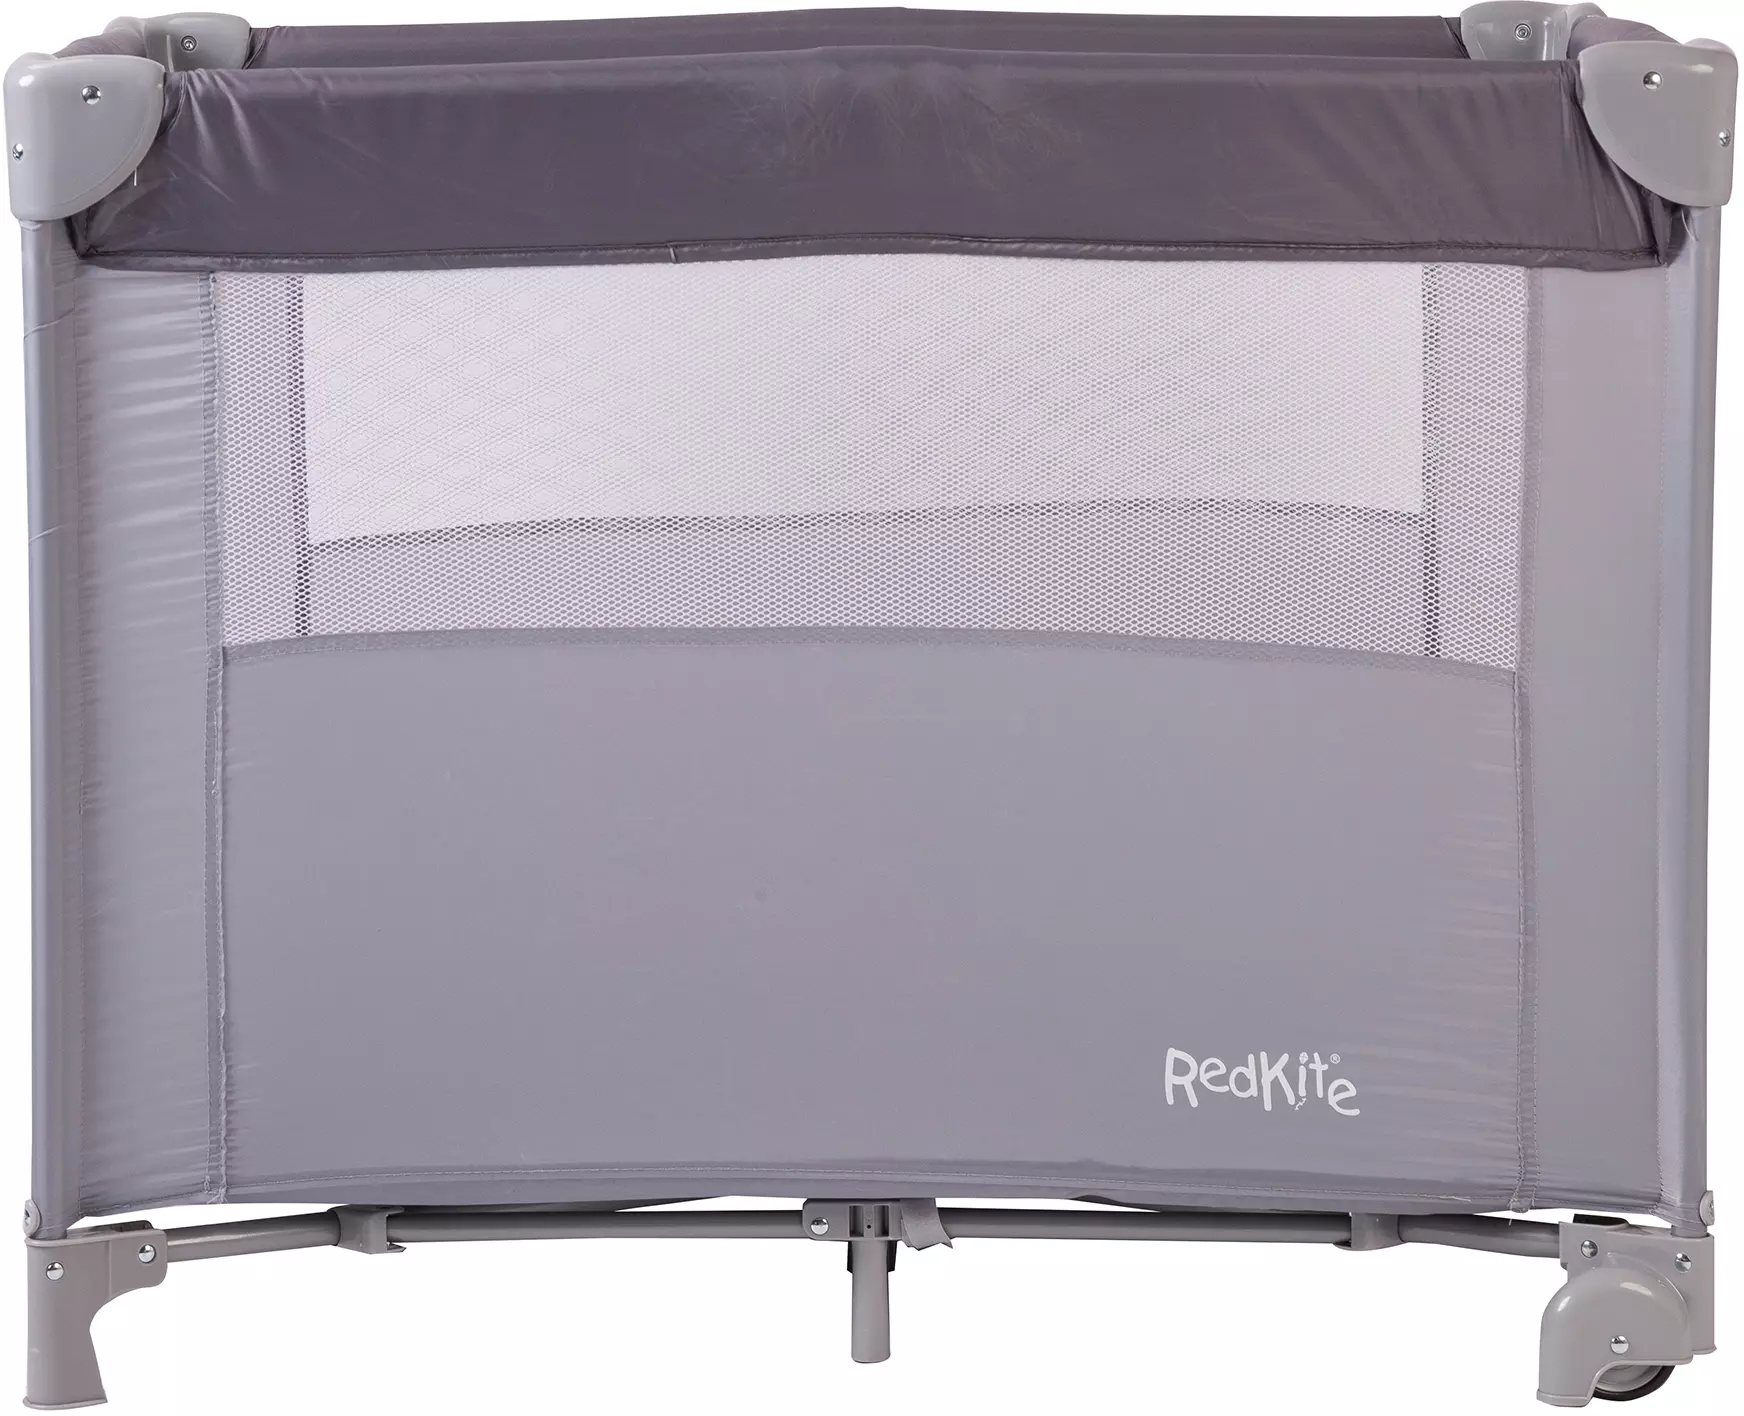 red kite dreamer bassinette travel crib mattress